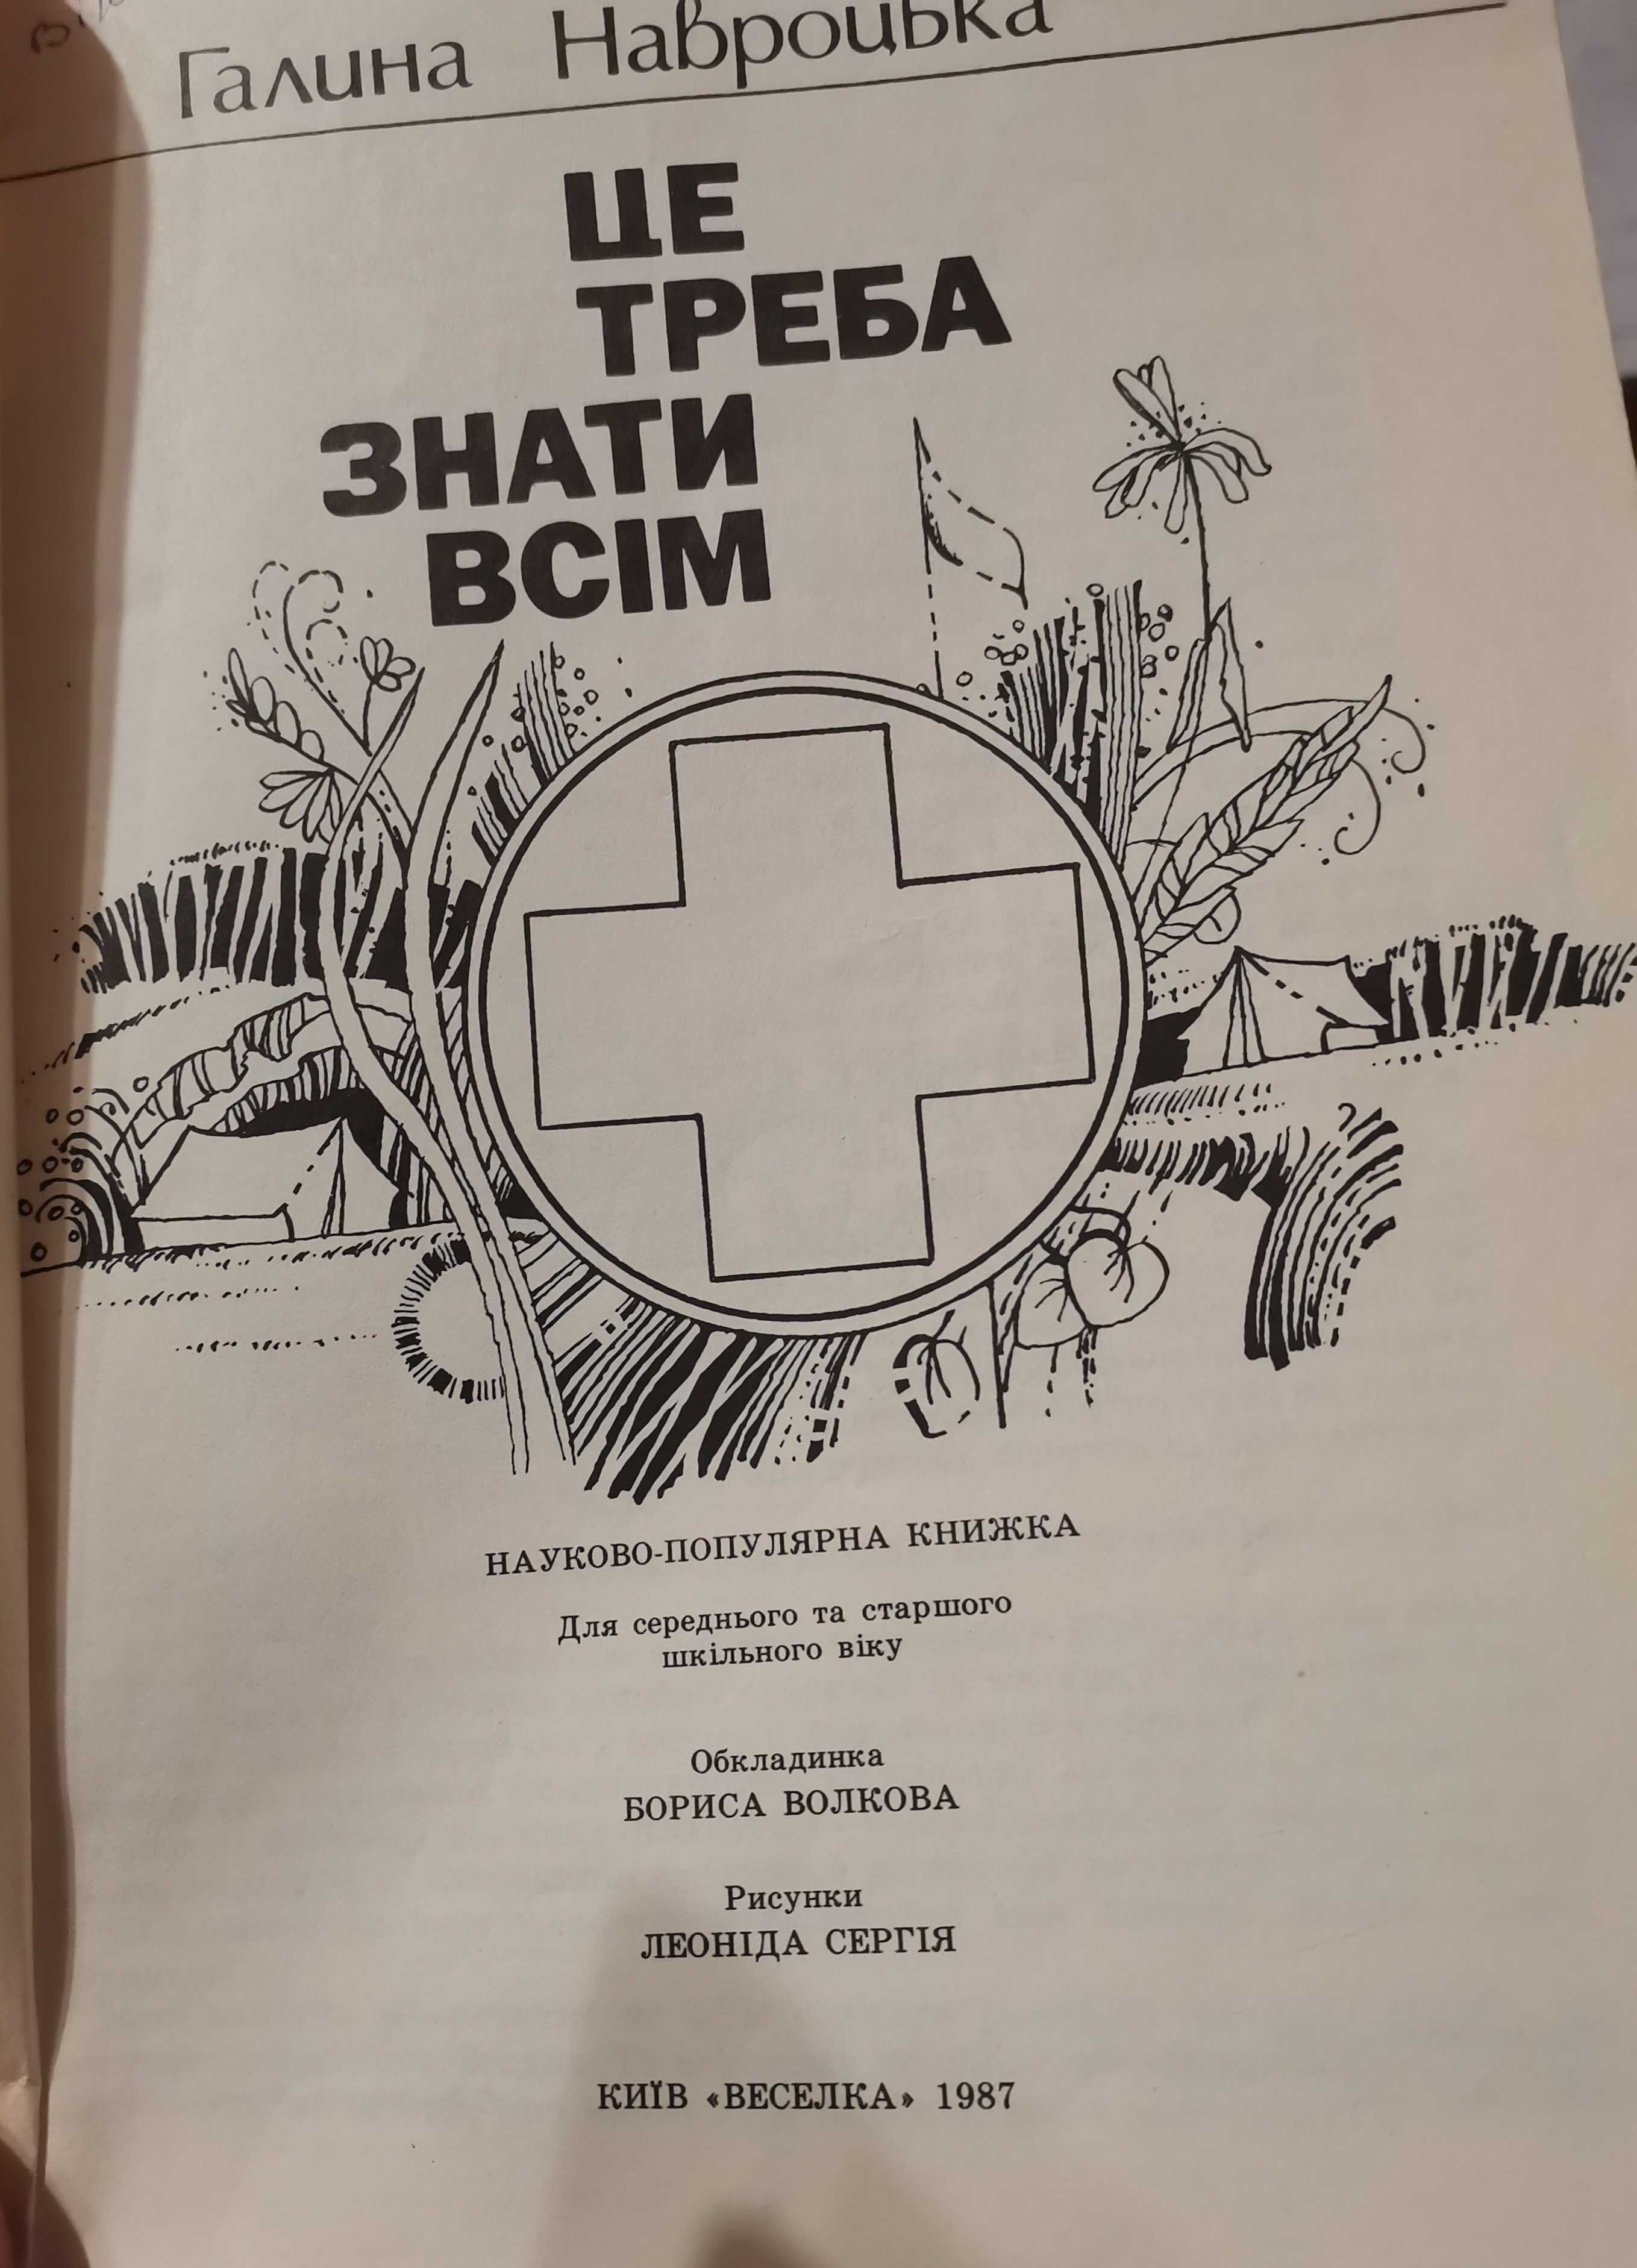 " Методы гельминтологического исследования" З. Г. Василькова 1955 год